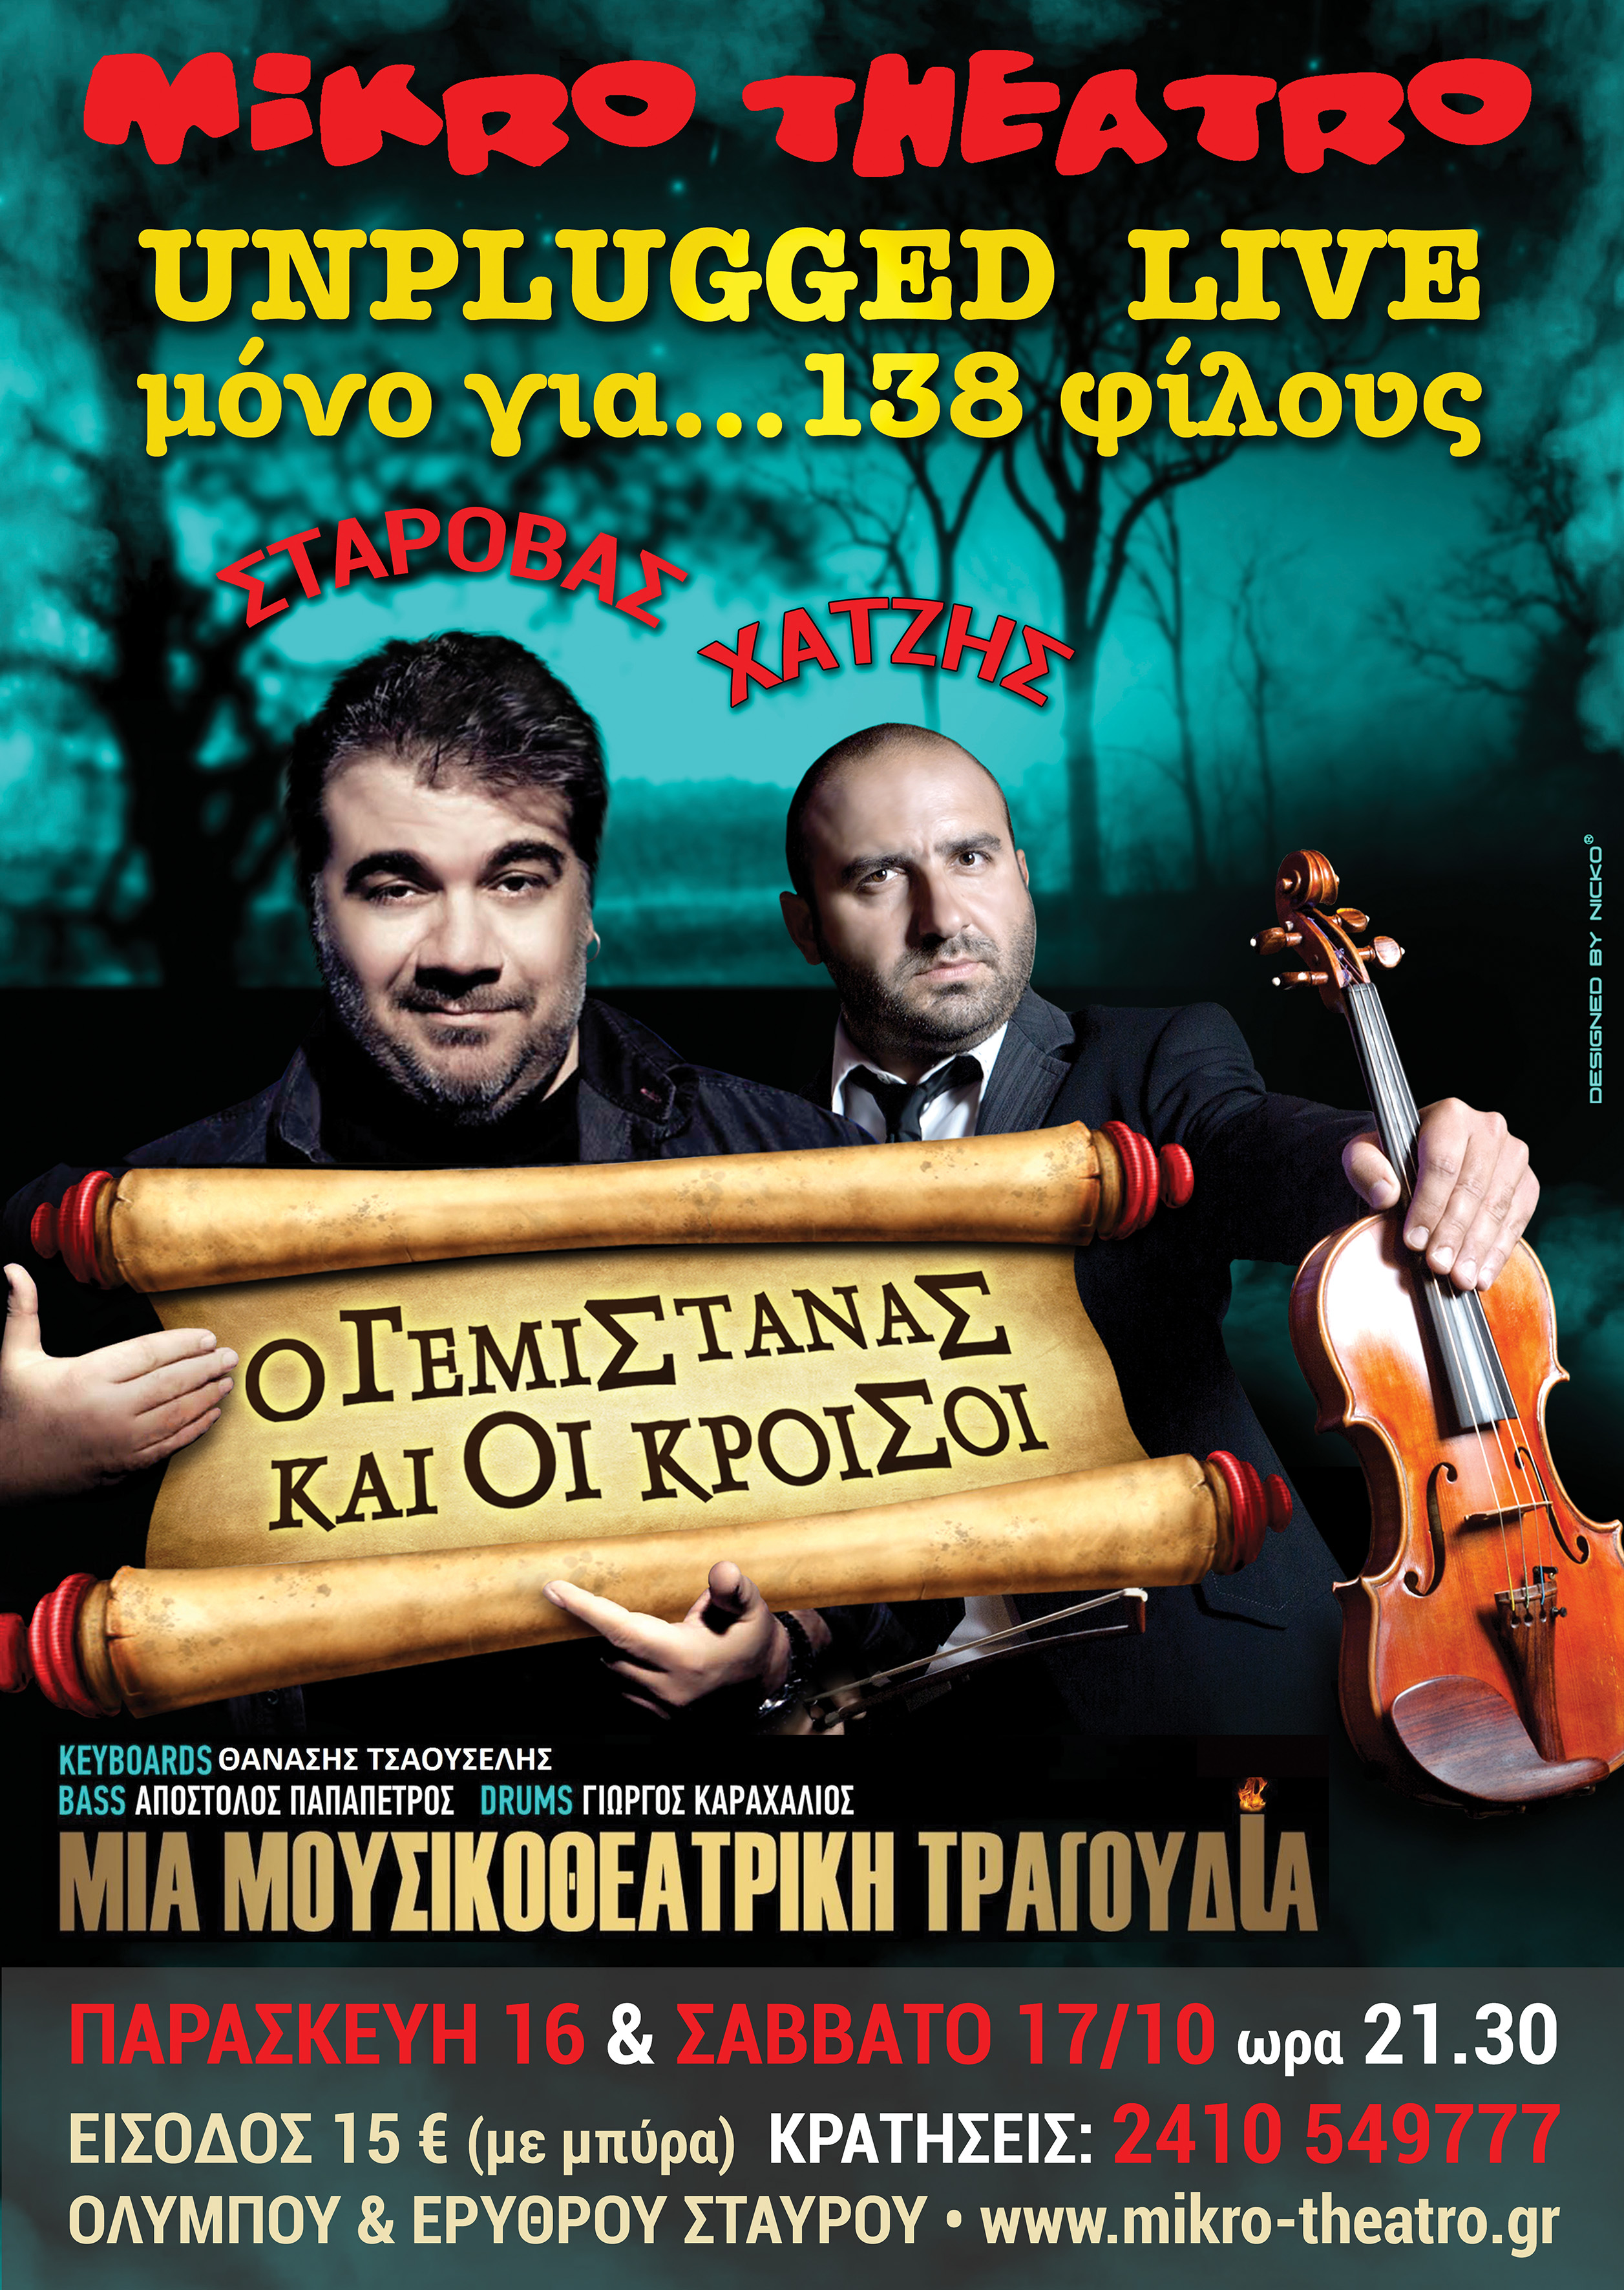 Δημήτρης Σταρόβας - Unplugged στο Μικρό Θέατρο